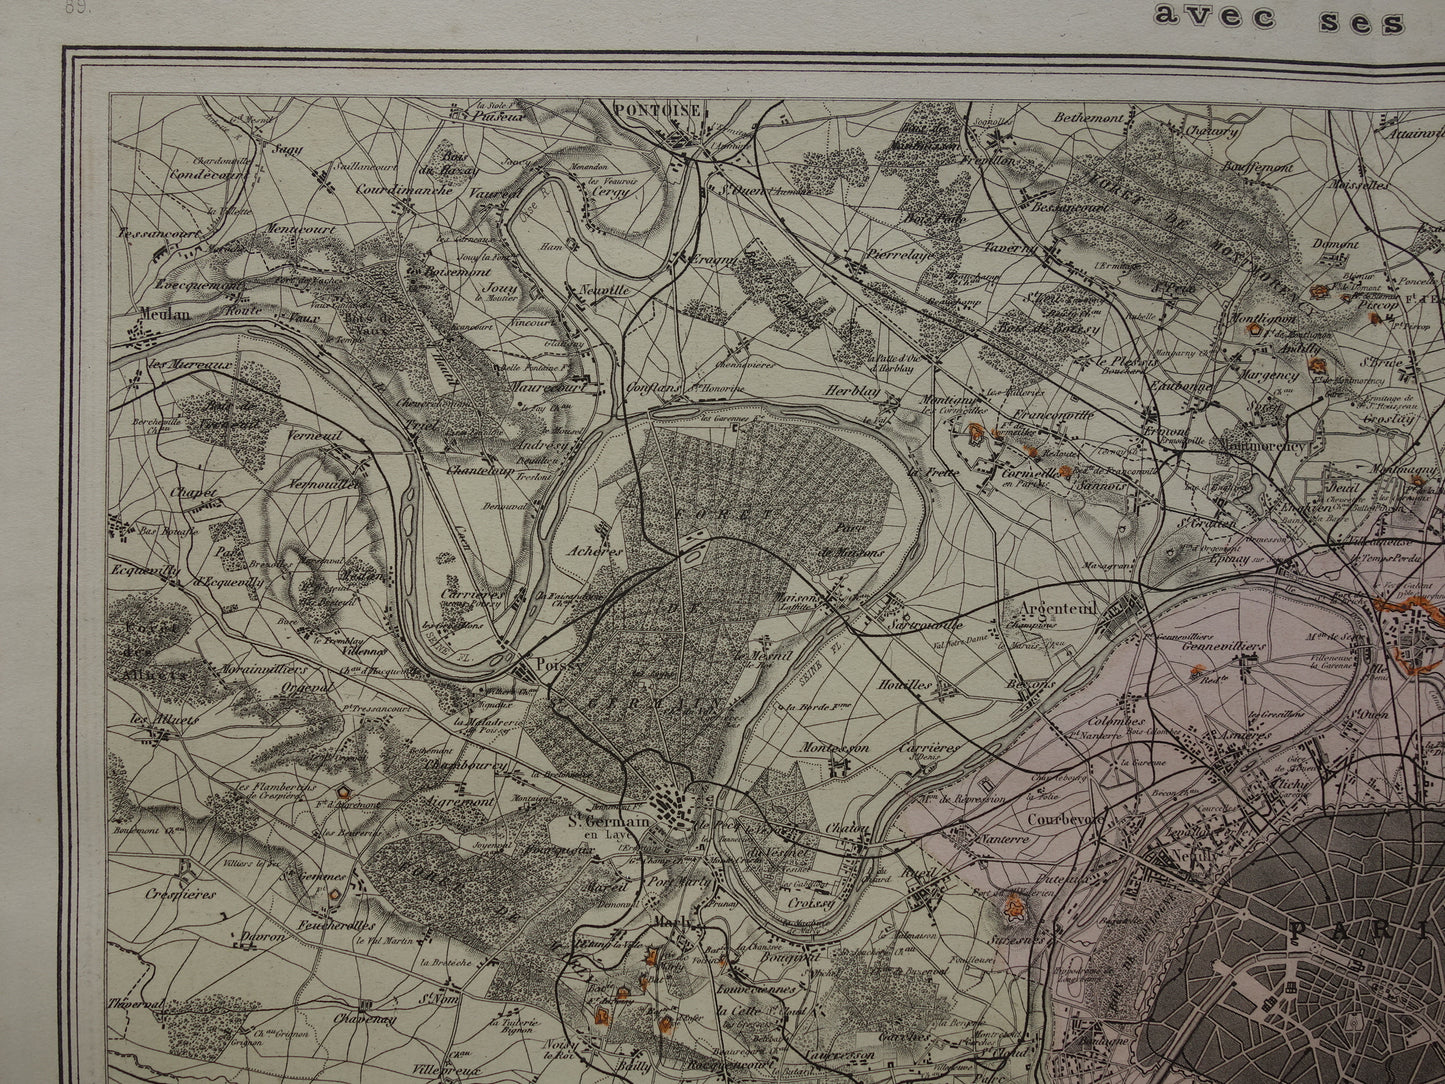 PARIJS grote oude kaart van Parijs uit het jaar 1886 Originele antieke plattegrond omgeving Parijs historische forten vintage print